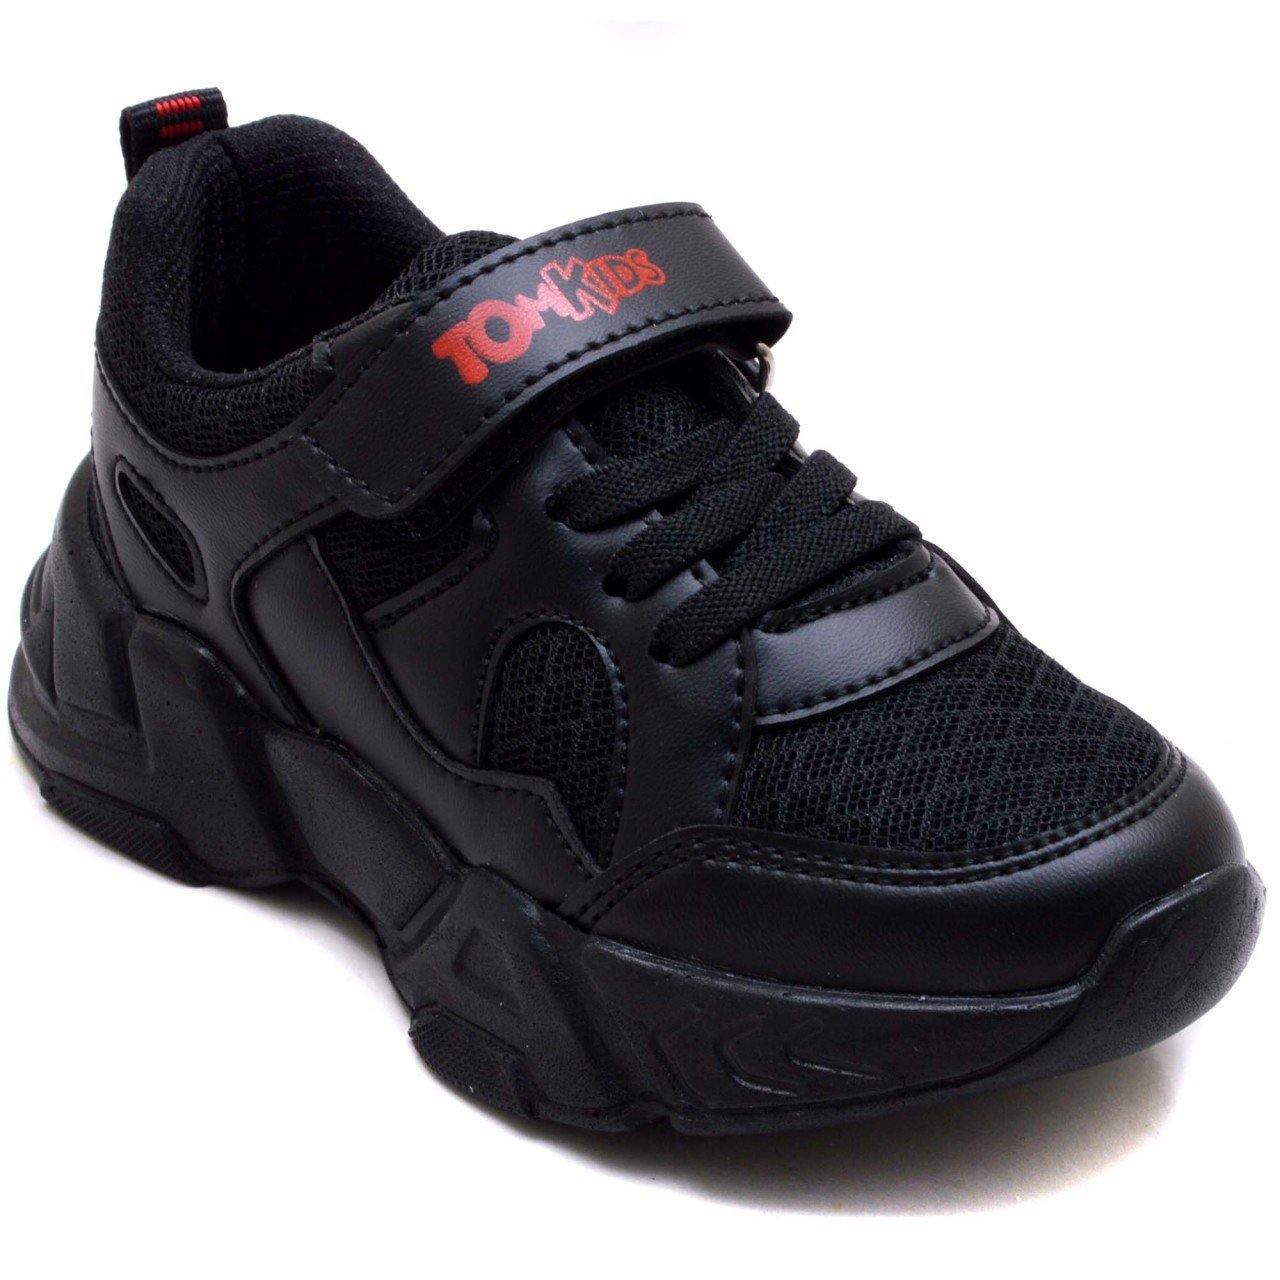 TOMKIDS-9 Patik Spor Ayakkabı - Siyah